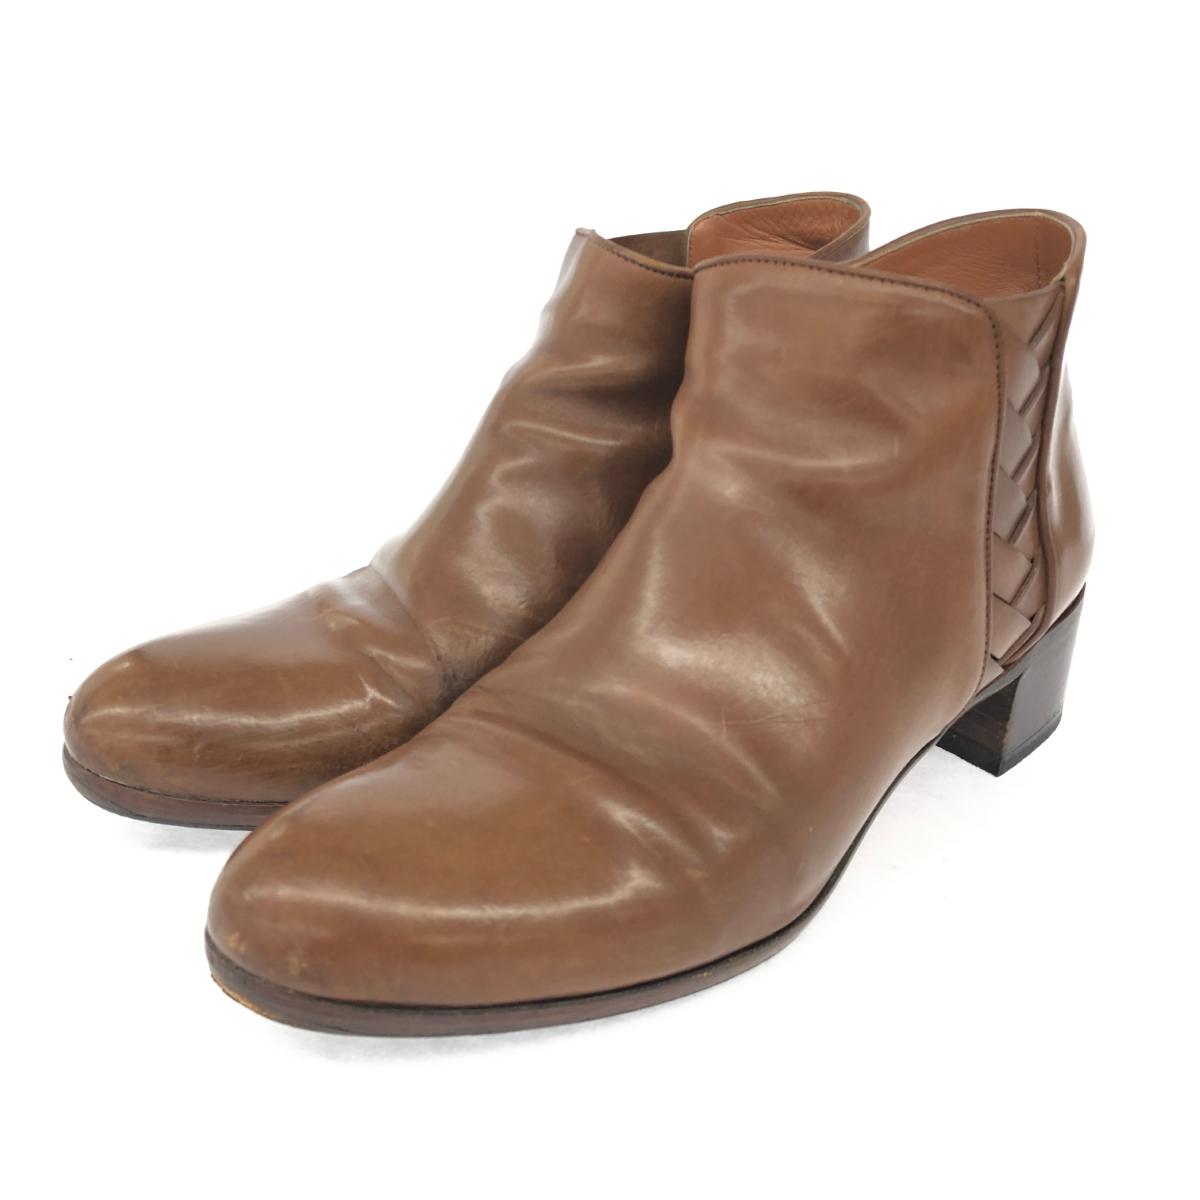 SARTORE サルトル ショートブーツ 36 ブラウン レザー レディース 靴 シューズ ブーティー boots 【中古】